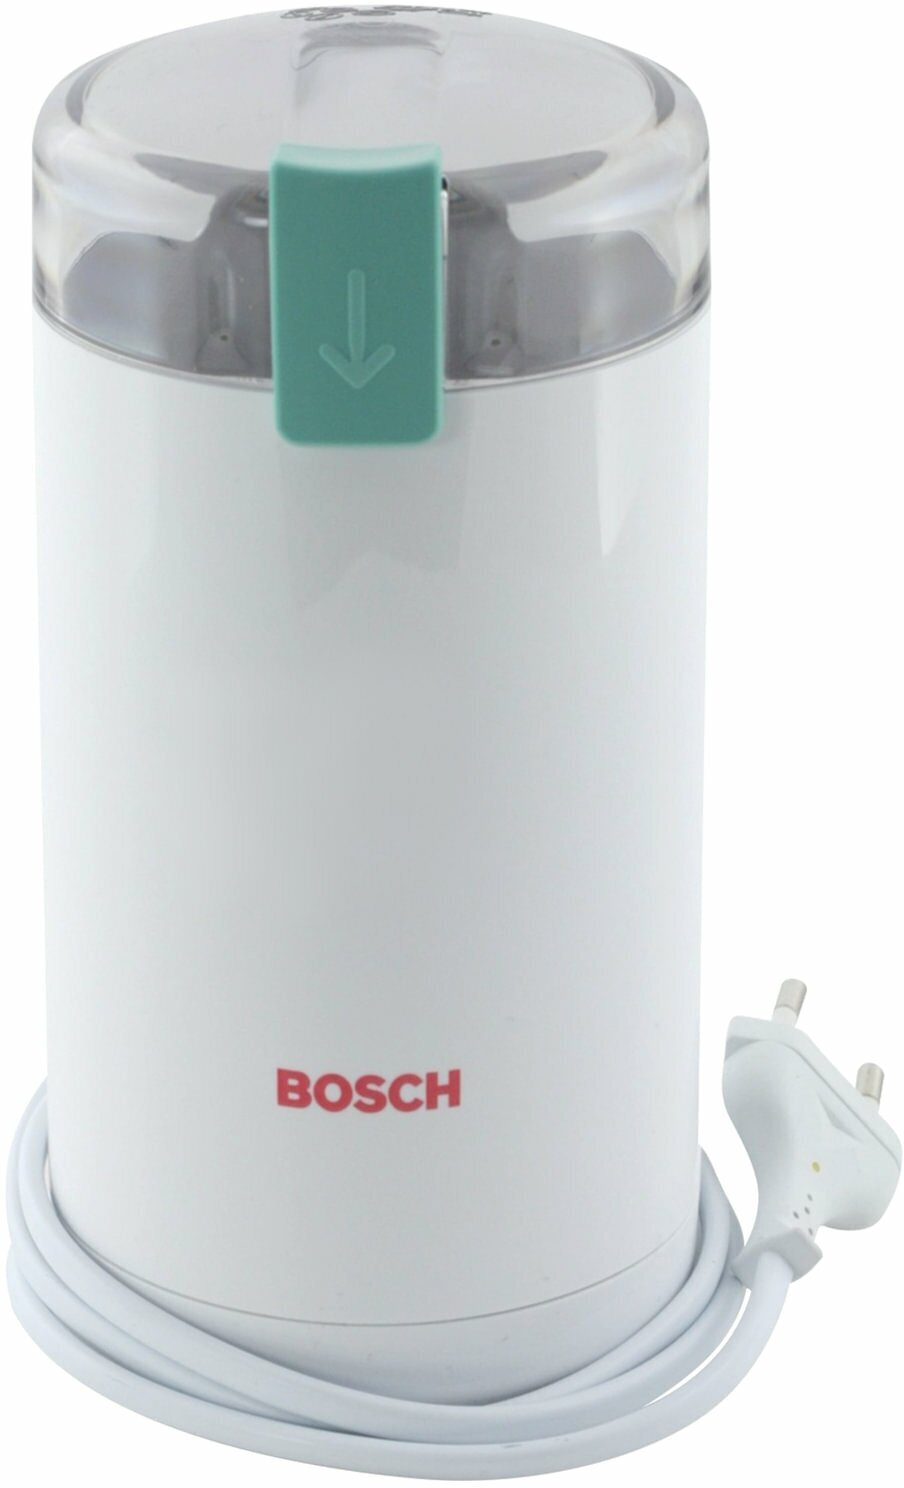 Кофемолка электрическая Bosch мощность 180 Вт, вместимость 75 г, пластик, белая (MKM6000)